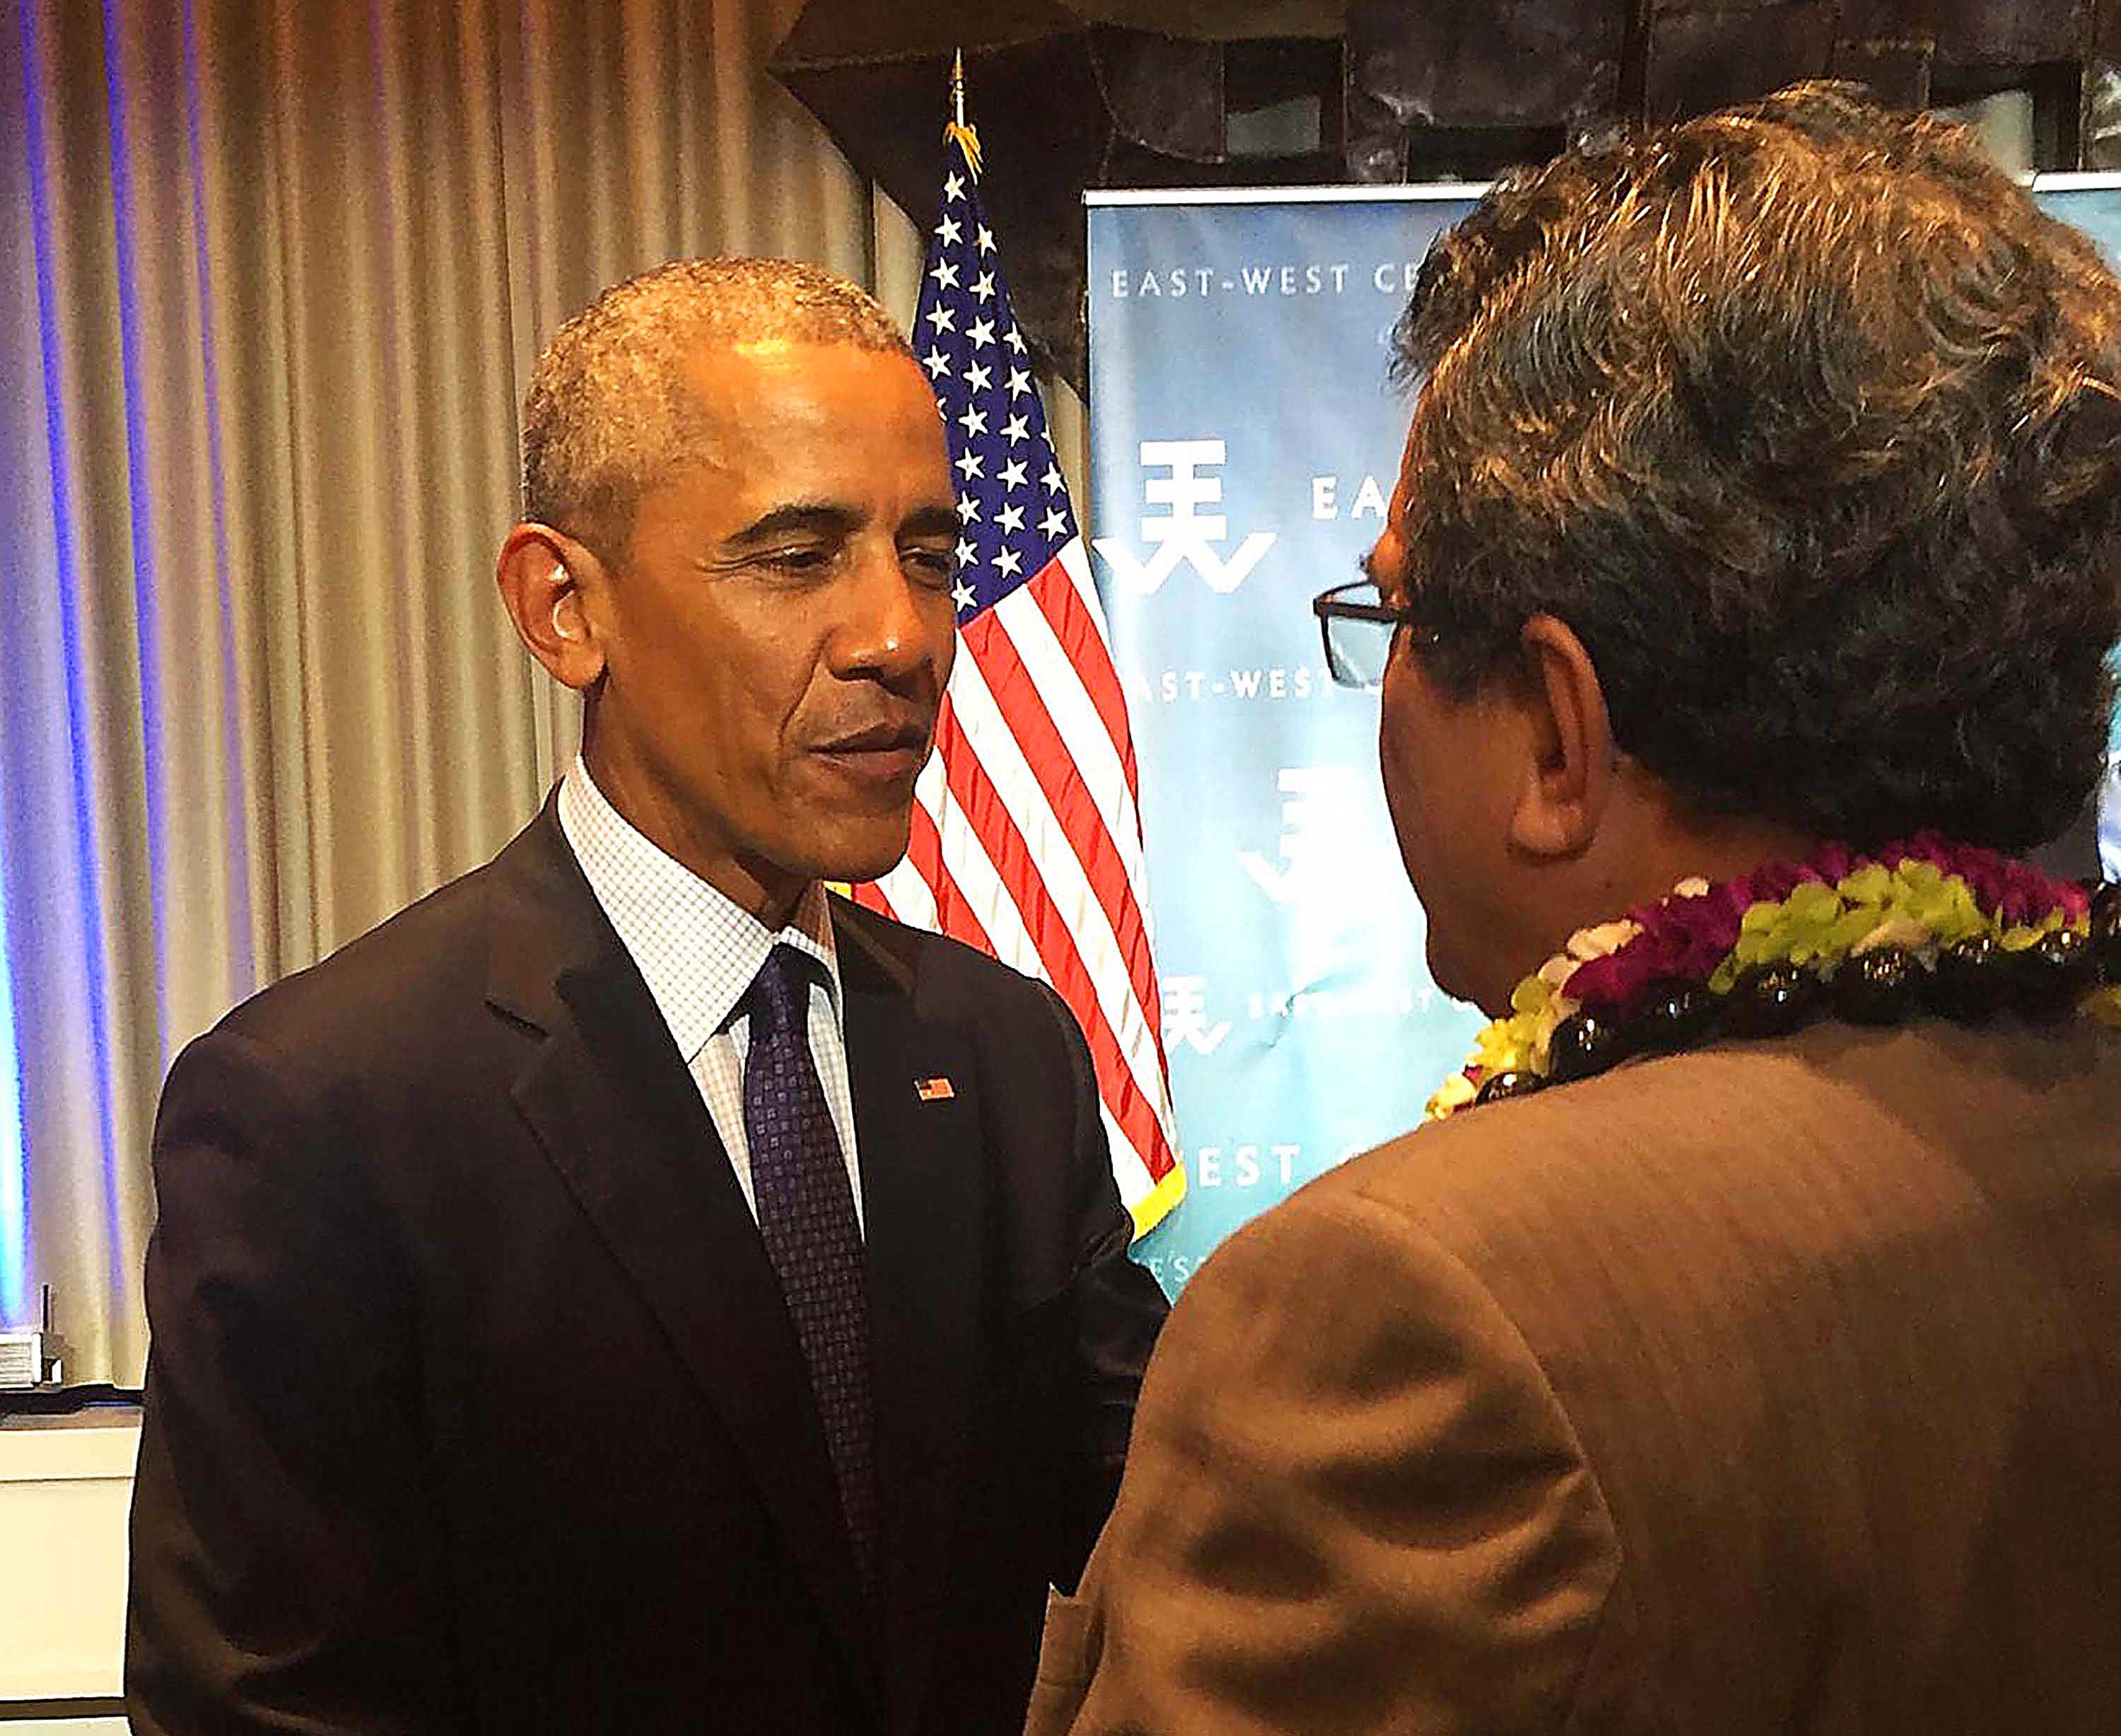 Dans le cadre de la 10ème Conférence des dirigeants des îles du Pacifique, à Hawaii, le président de la Polynésie française, Edouard Fritch, a rencontré le président des Etats-Unis, Barack Obama.